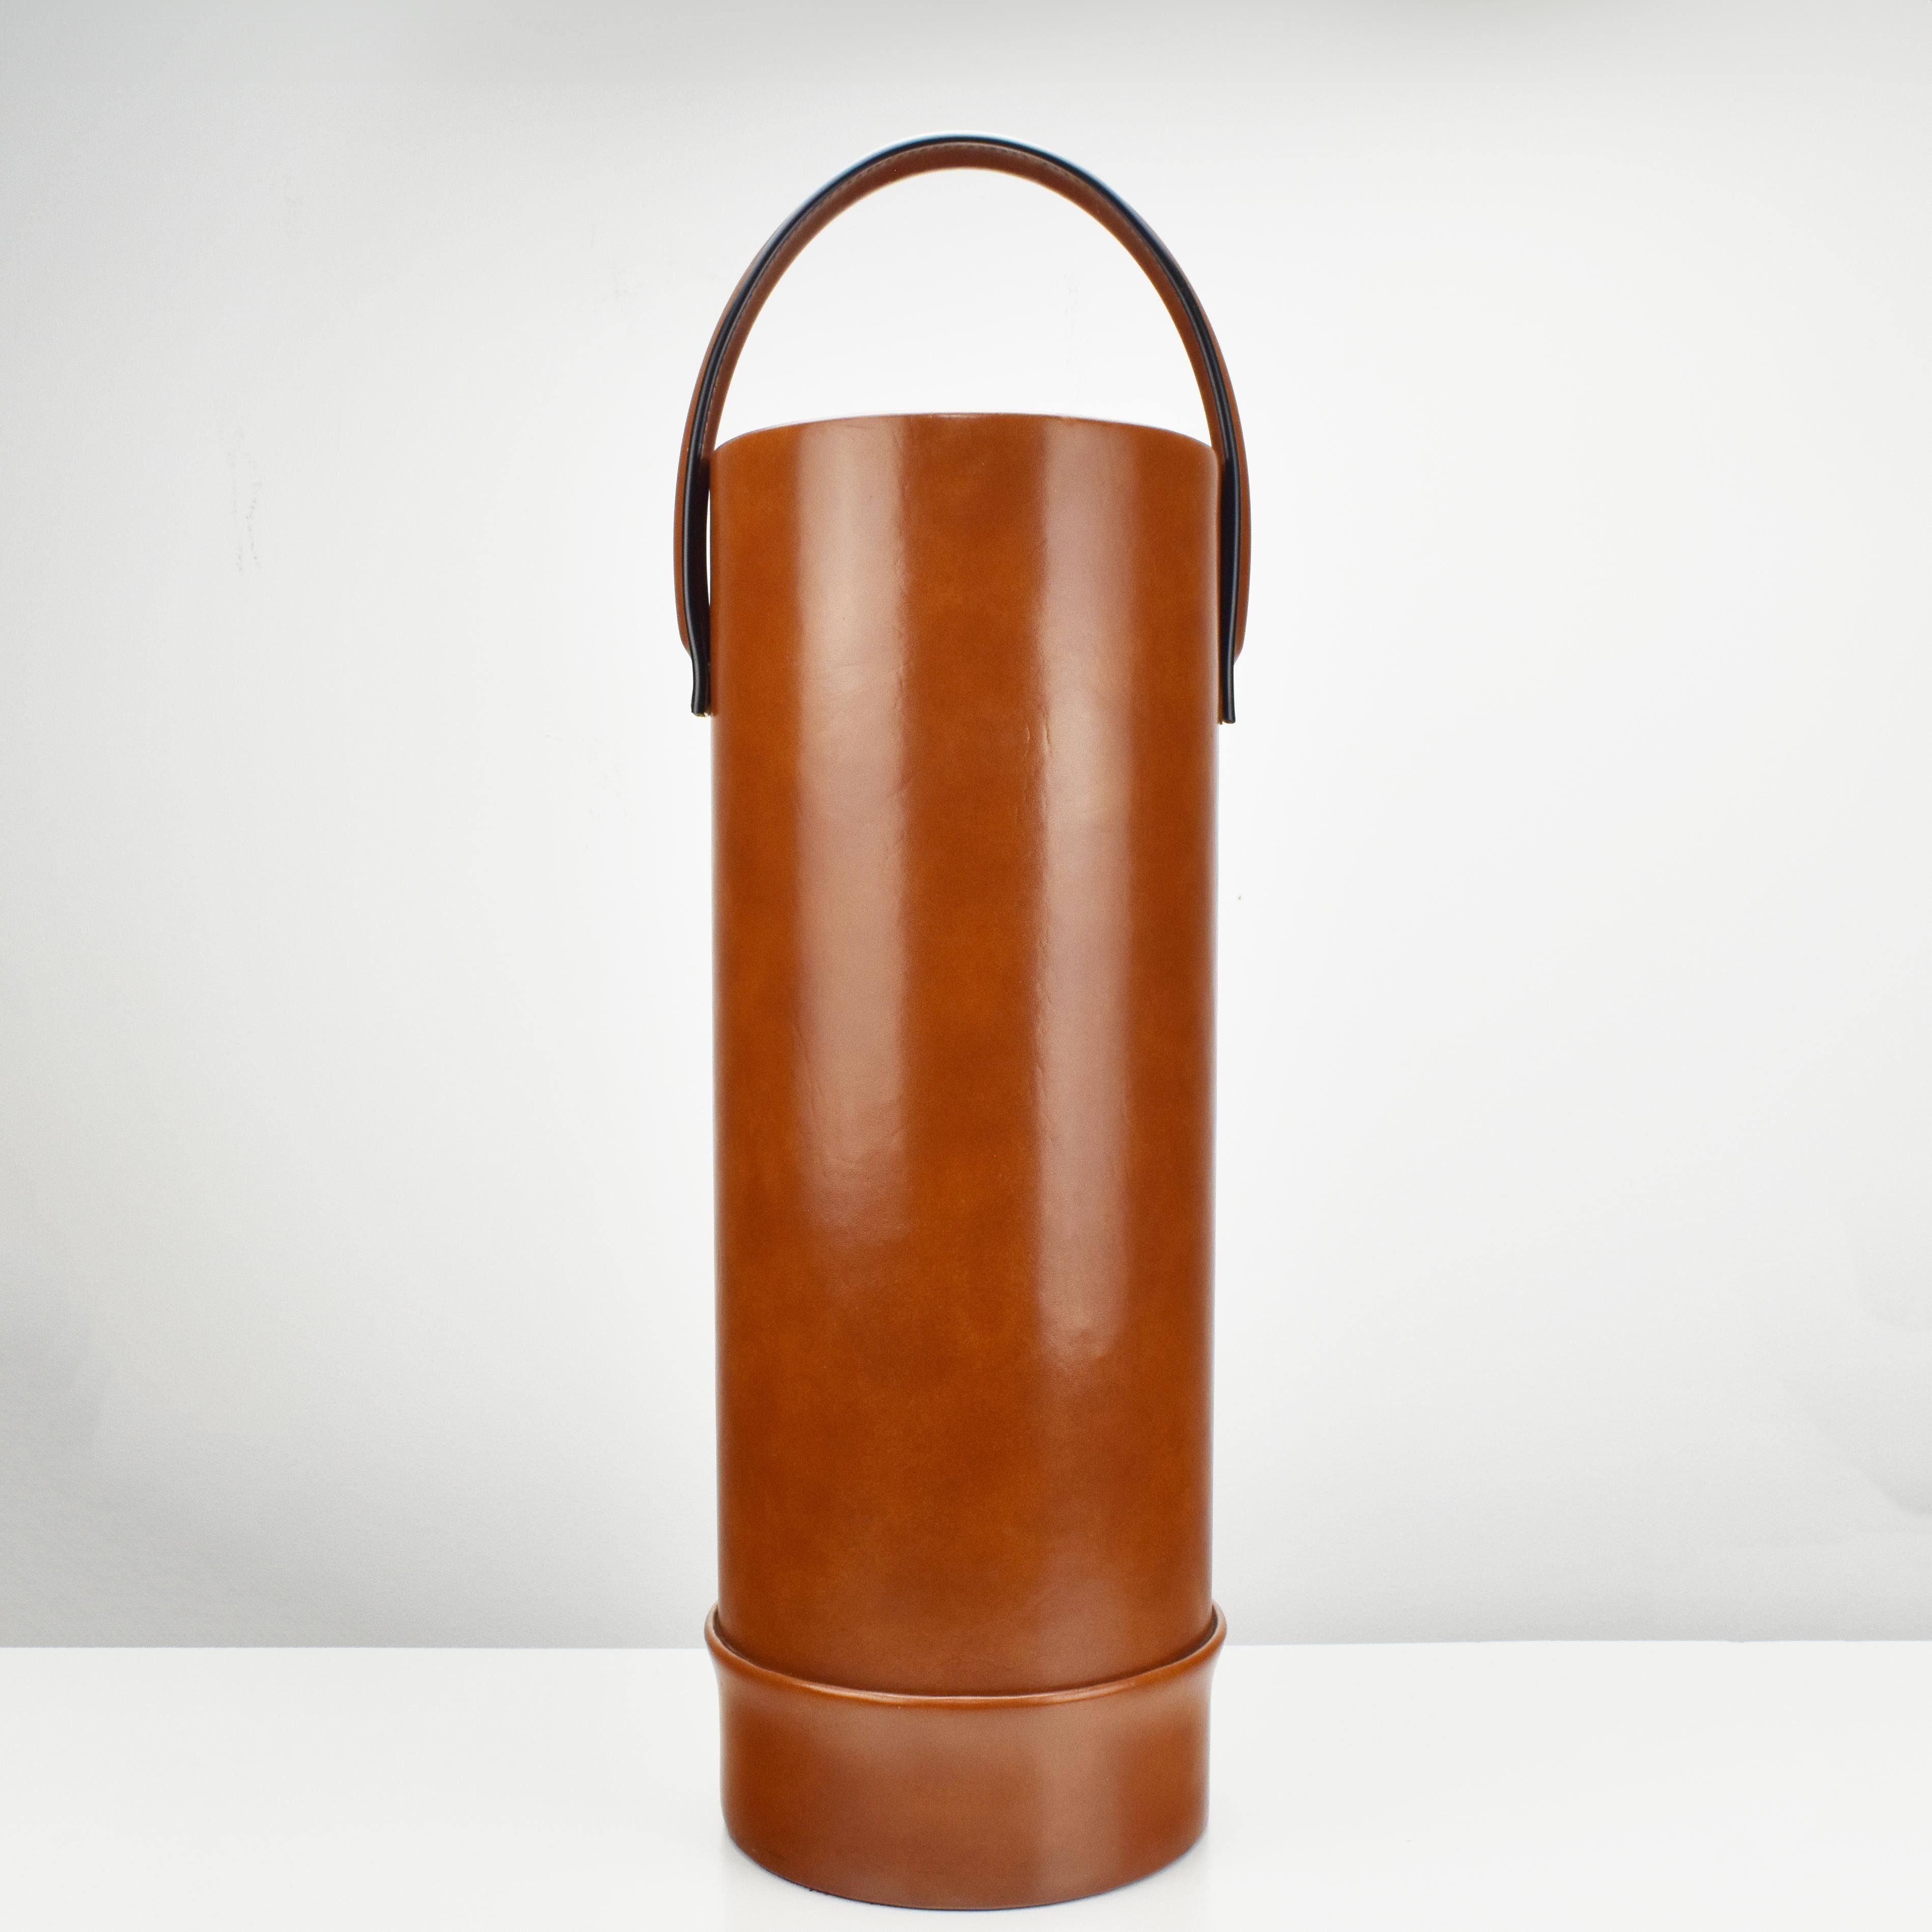 Ein Vintage-Schirmständer oder Papierkorb im Stil von Jacques Adnet mit beweglichem Griff, aus cognacfarbenem Kunstleder mit cremefarbenen Kontrastnähten von unbekanntem Hersteller, aus den 1960er Jahren.